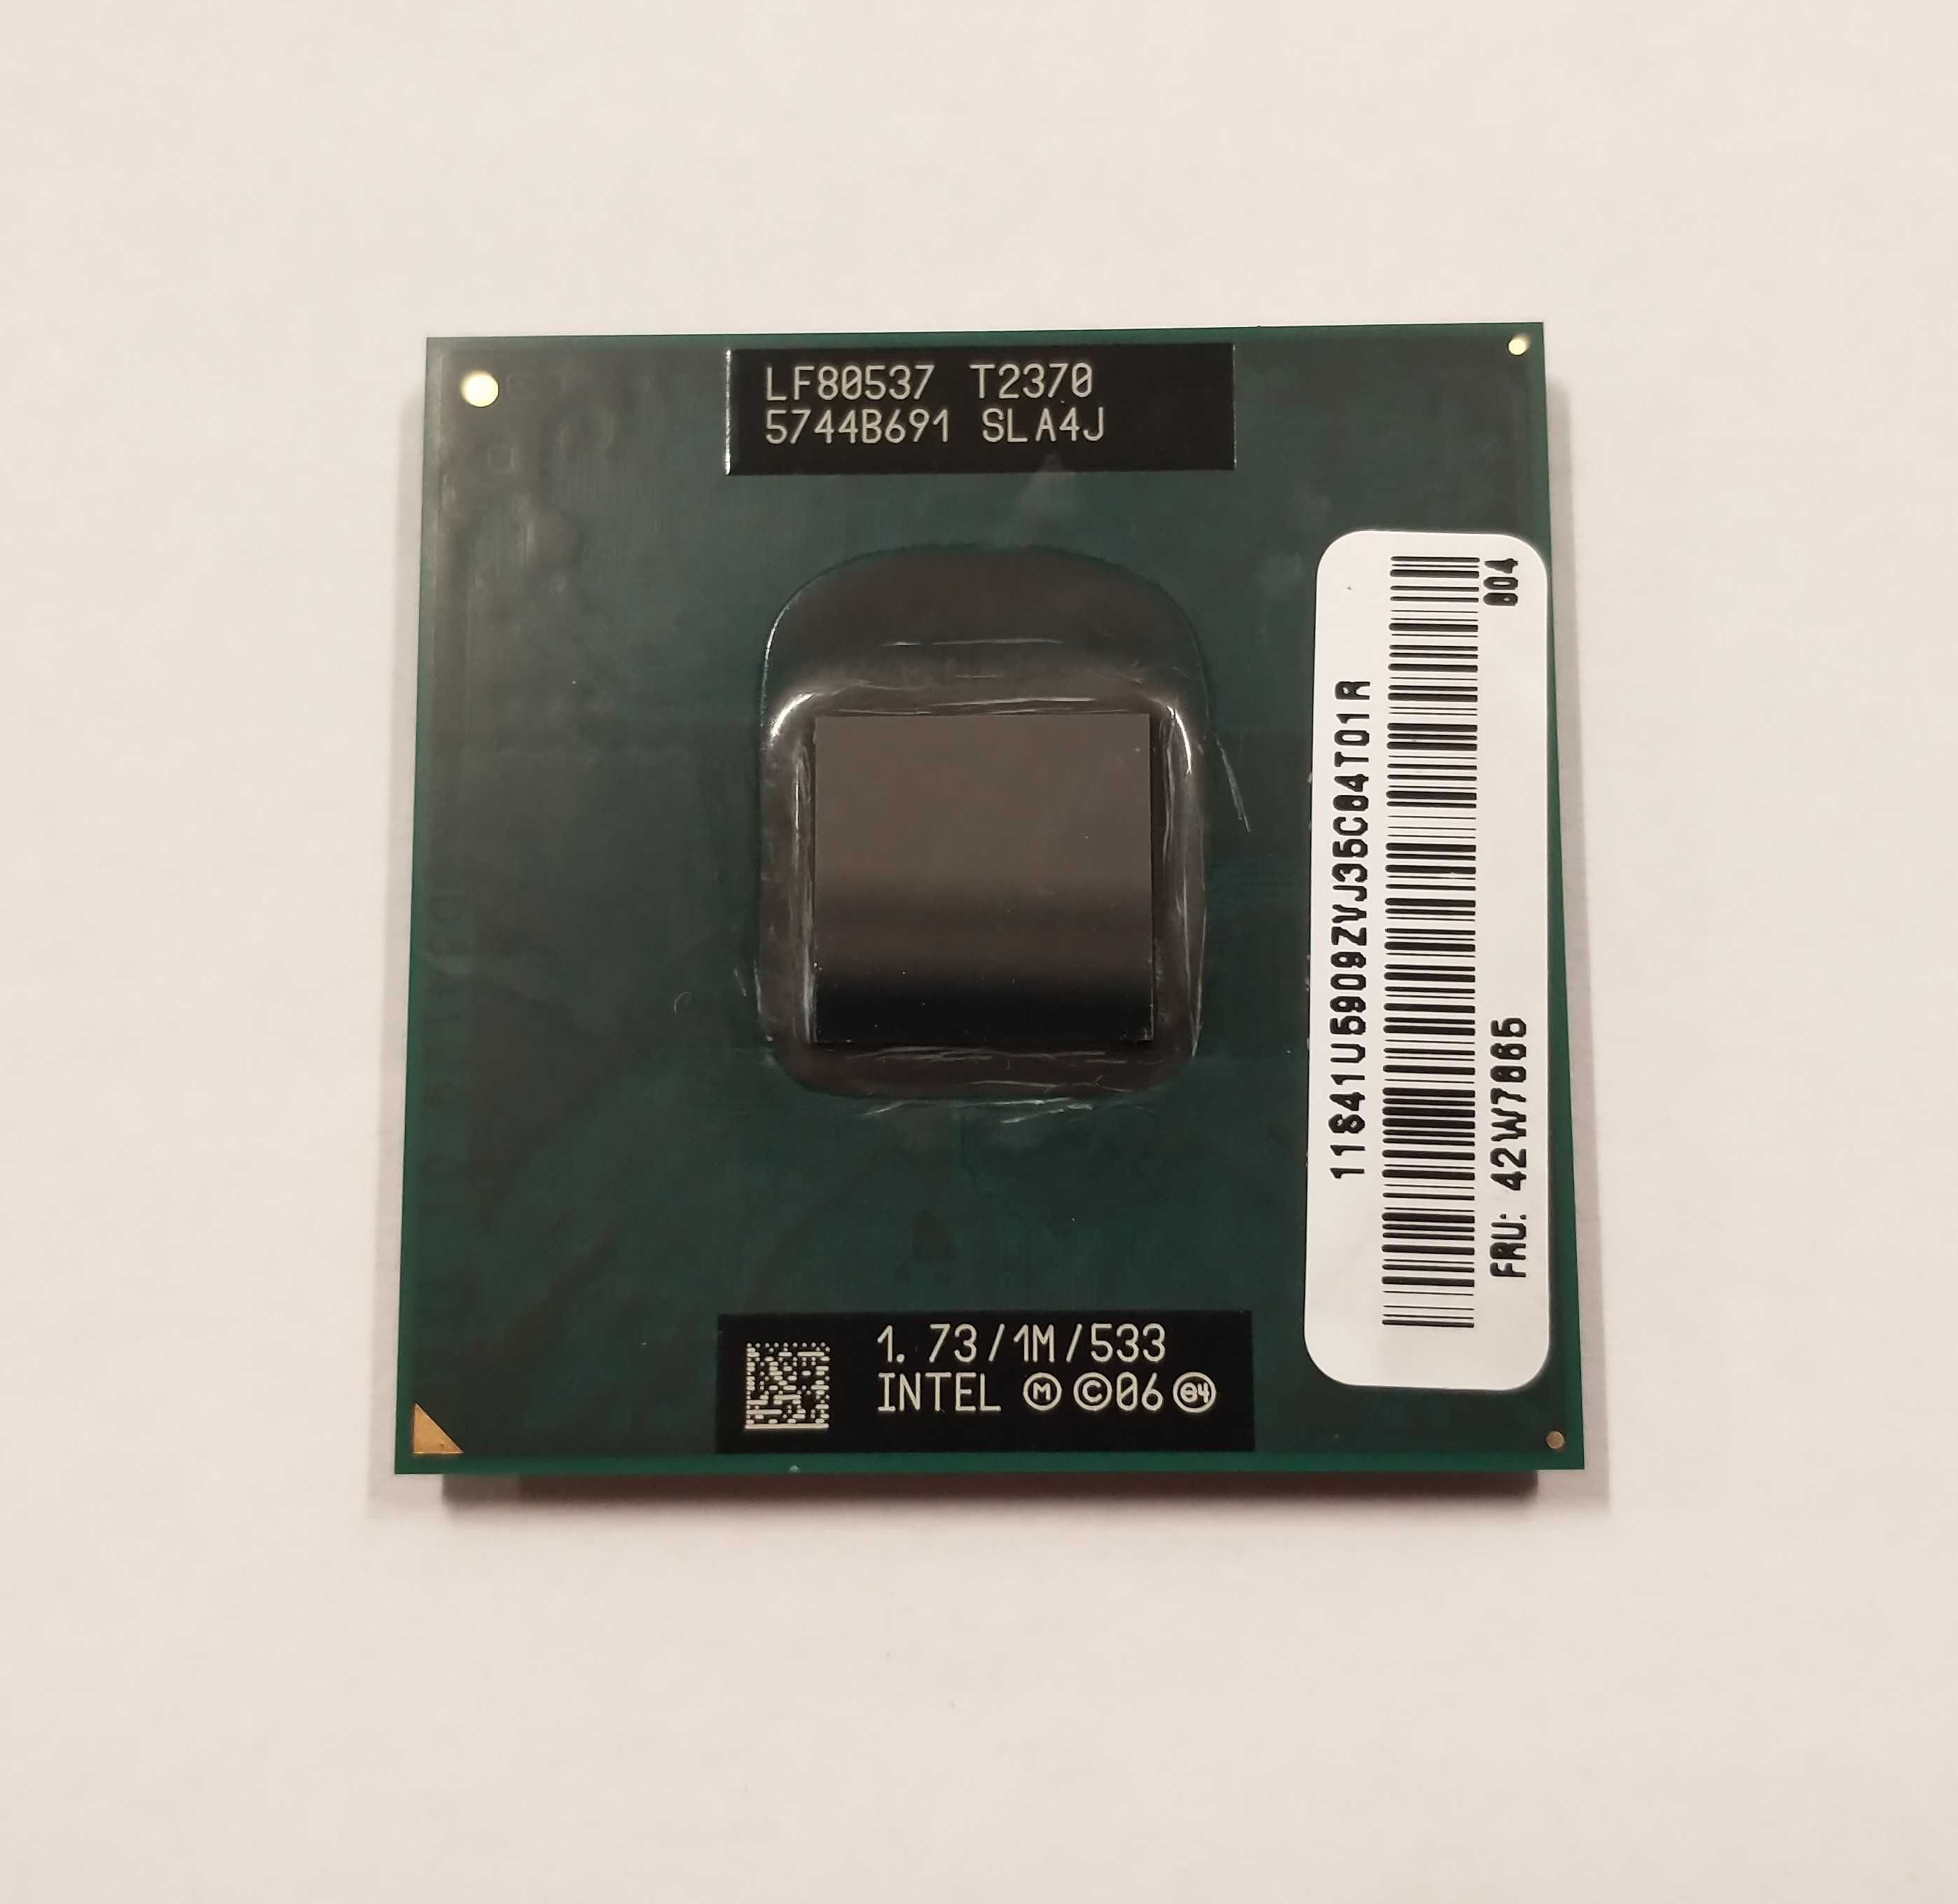 Procesor Intel Pentium T2370